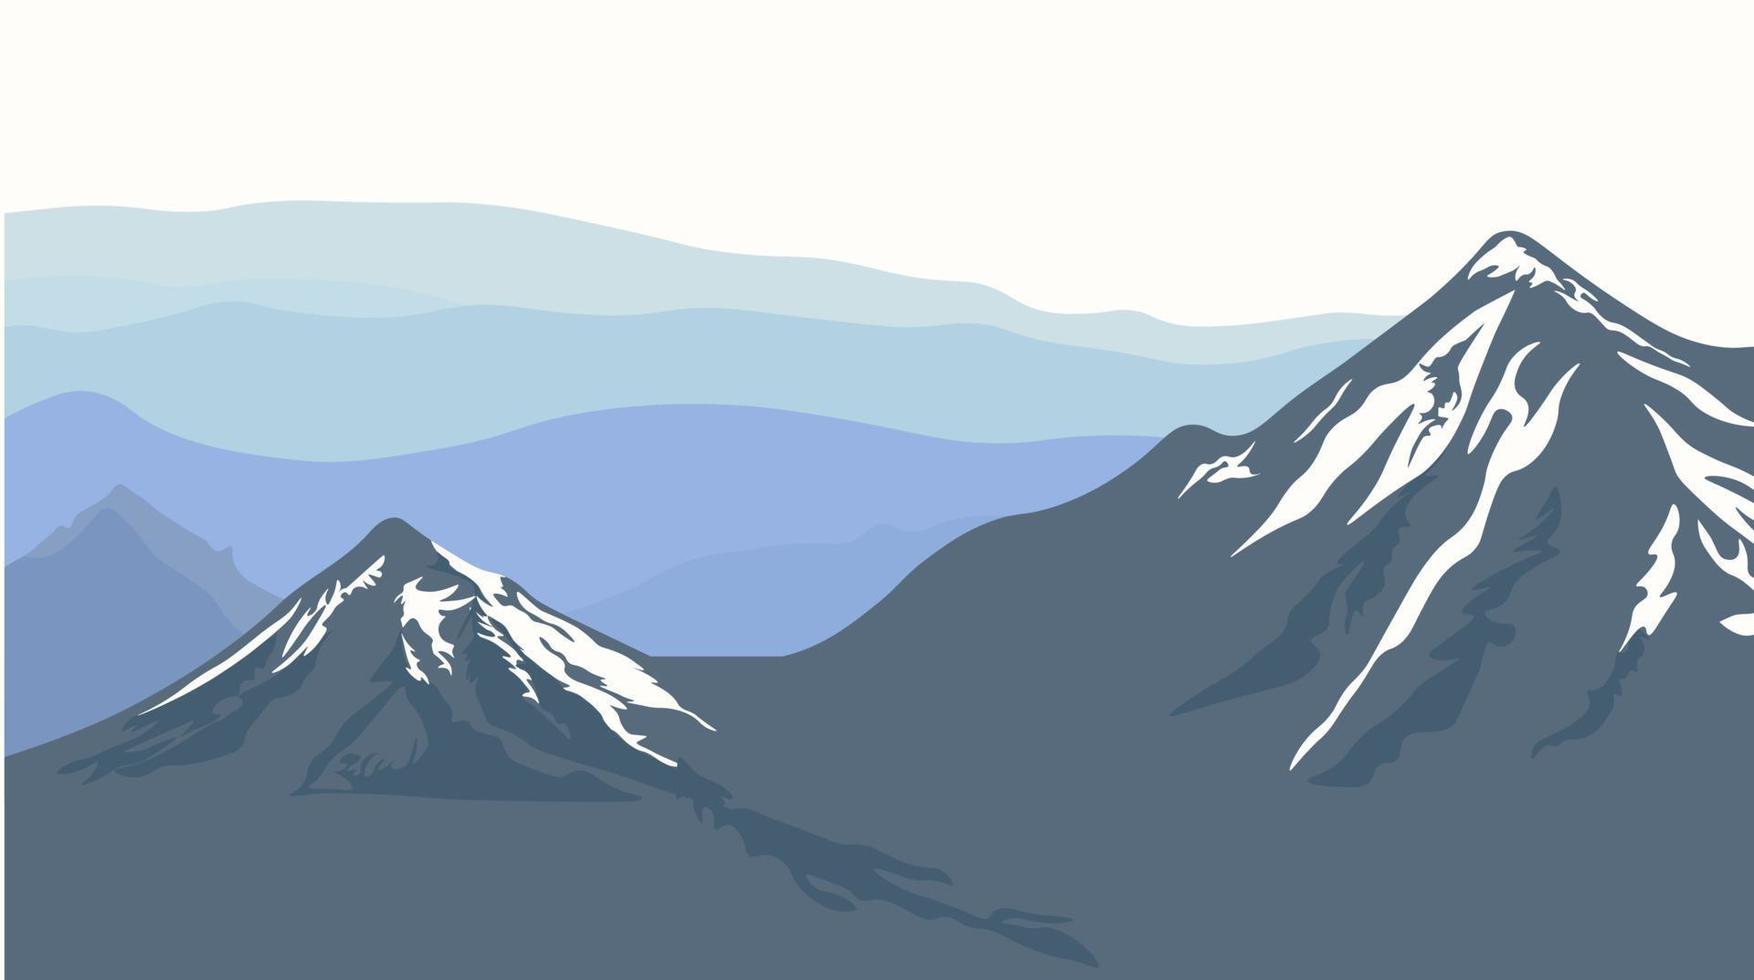 illustrazione di riserva di vettore delle montagne. colline innevate della catena montuosa. paesaggio con un orizzonte nebbioso. elementi di design per poster, copertine di libri, brochure, riviste, volantini, opuscoli